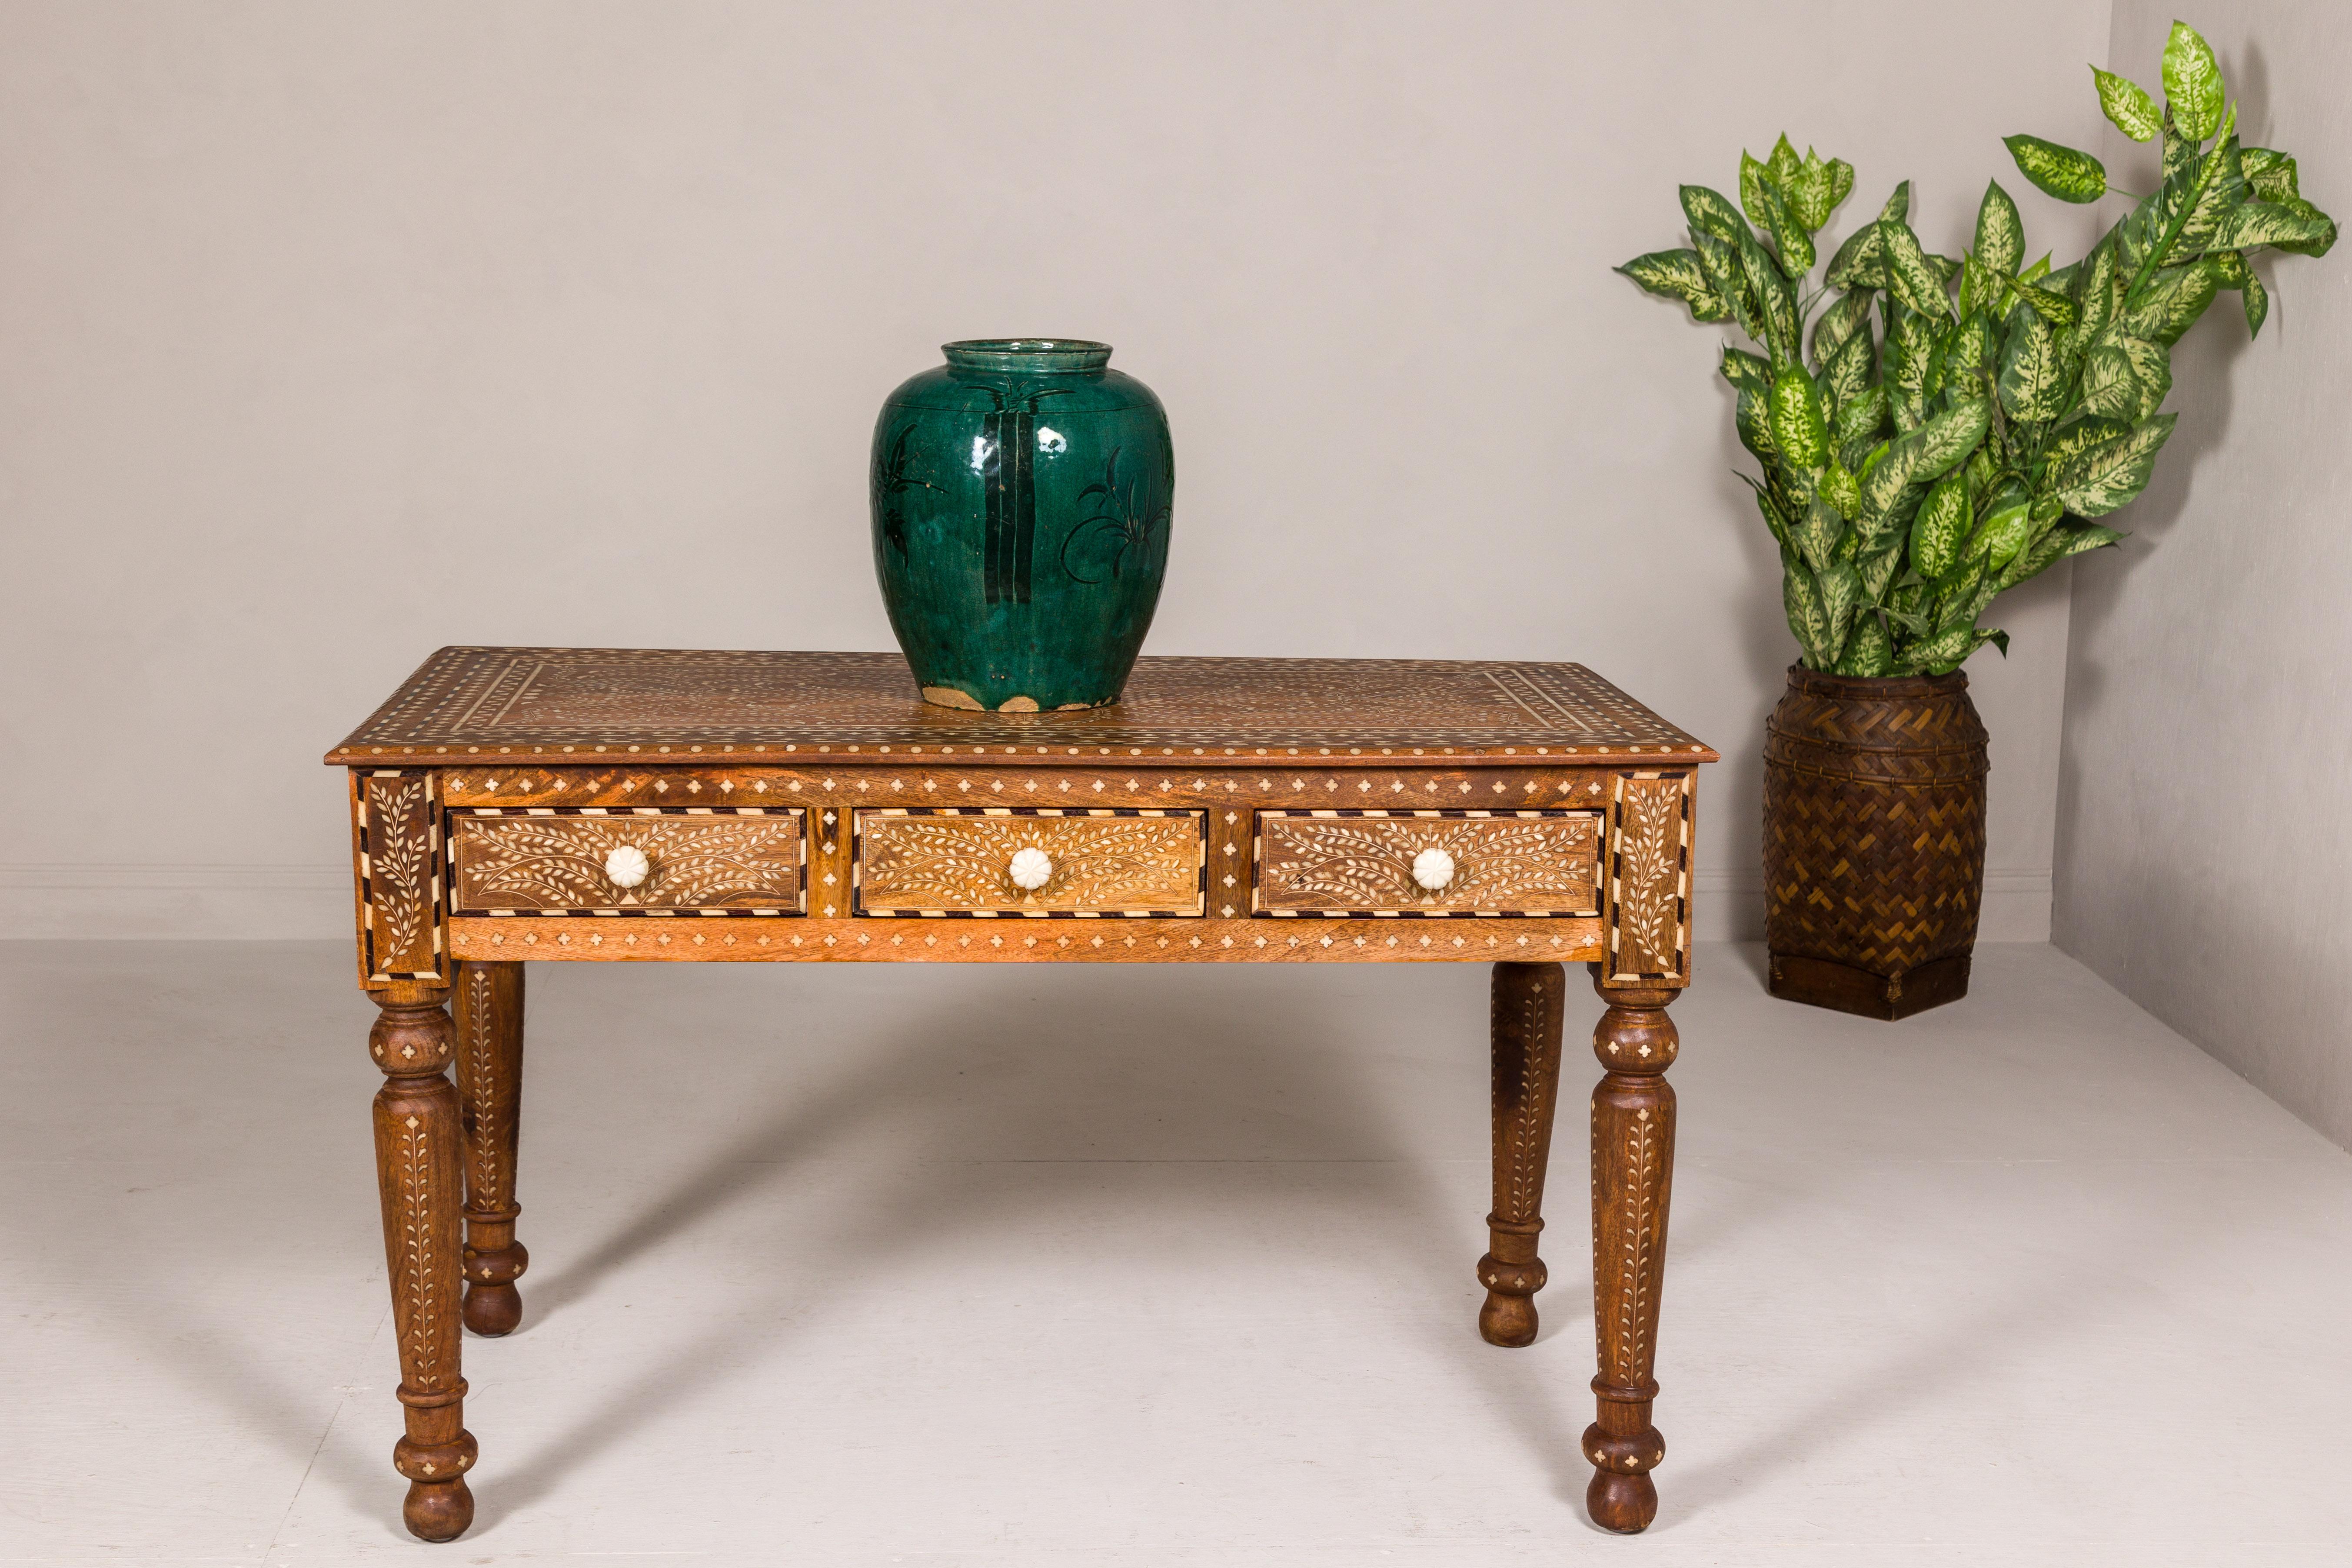 Ein Konsolentisch oder Schreibtisch aus Mangoholz im anglo-indischen Stil mit eingelegtem Knochendekor, drei Schubladen und gedrechselten Beinen. Dieser kunstvolle Konsolentisch oder Schreibtisch aus Mangoholz im anglo-indischen Stil ist ein